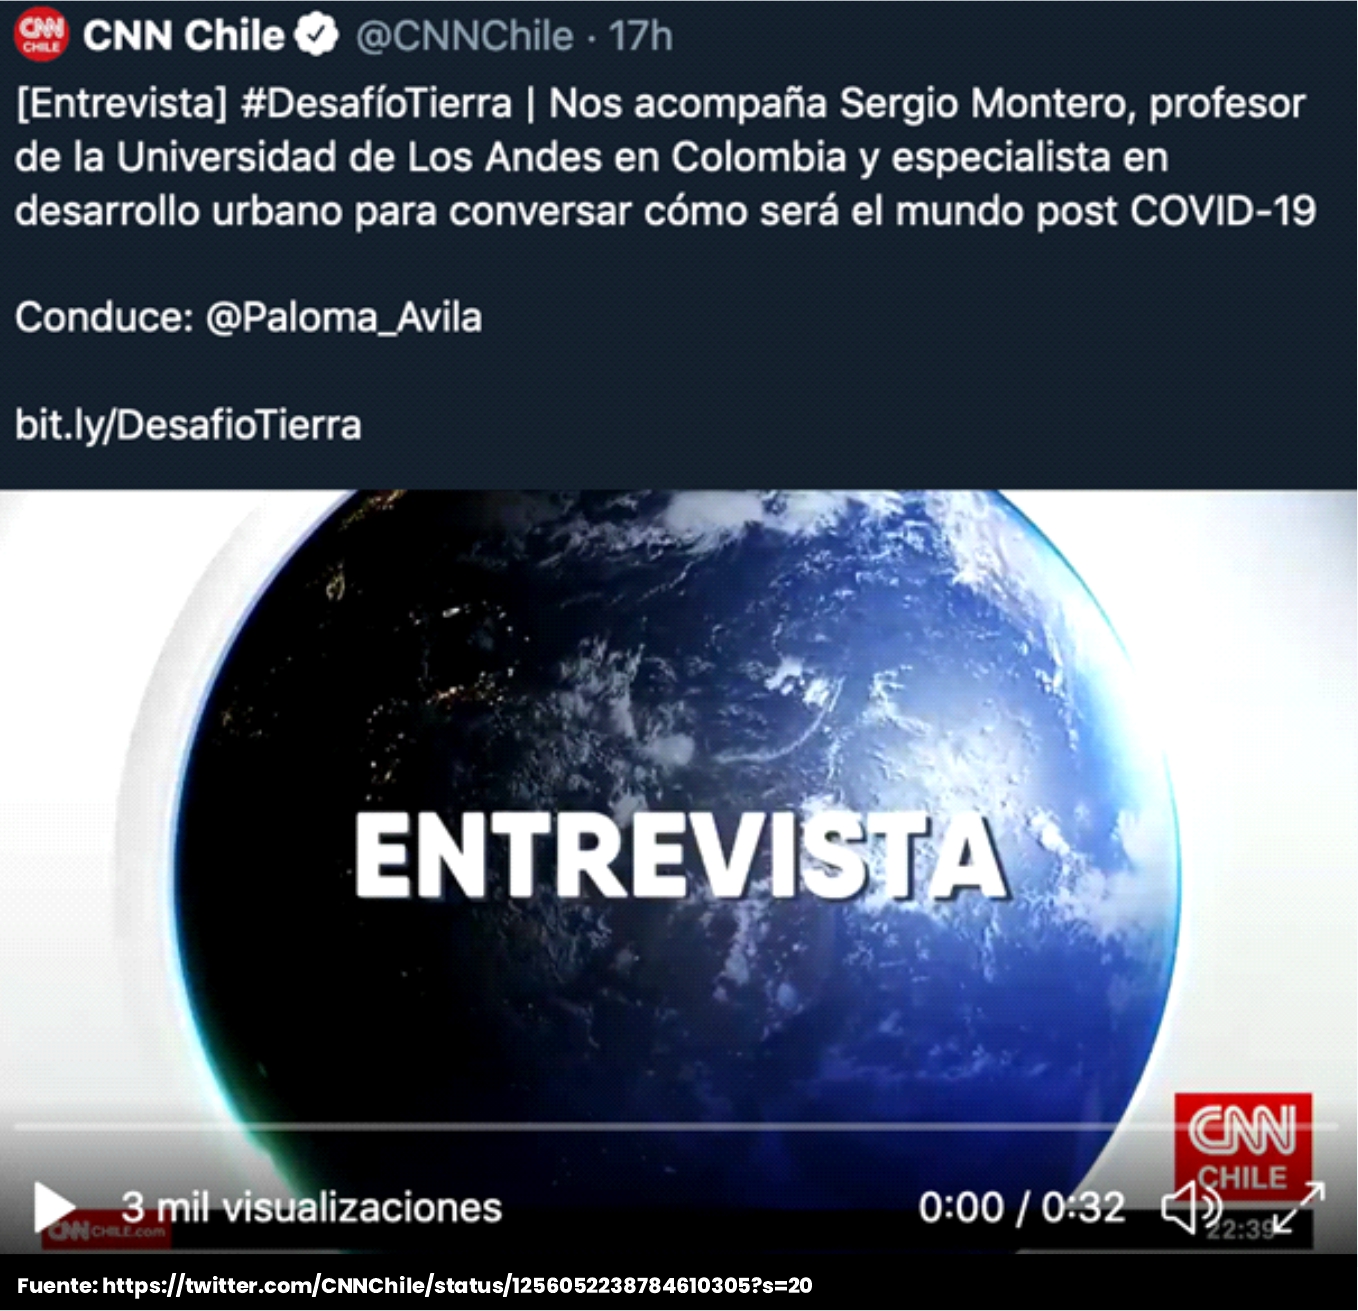 Sergio Montero en CNN Chile. Desafío tierra 1 - Cider | Uniandes